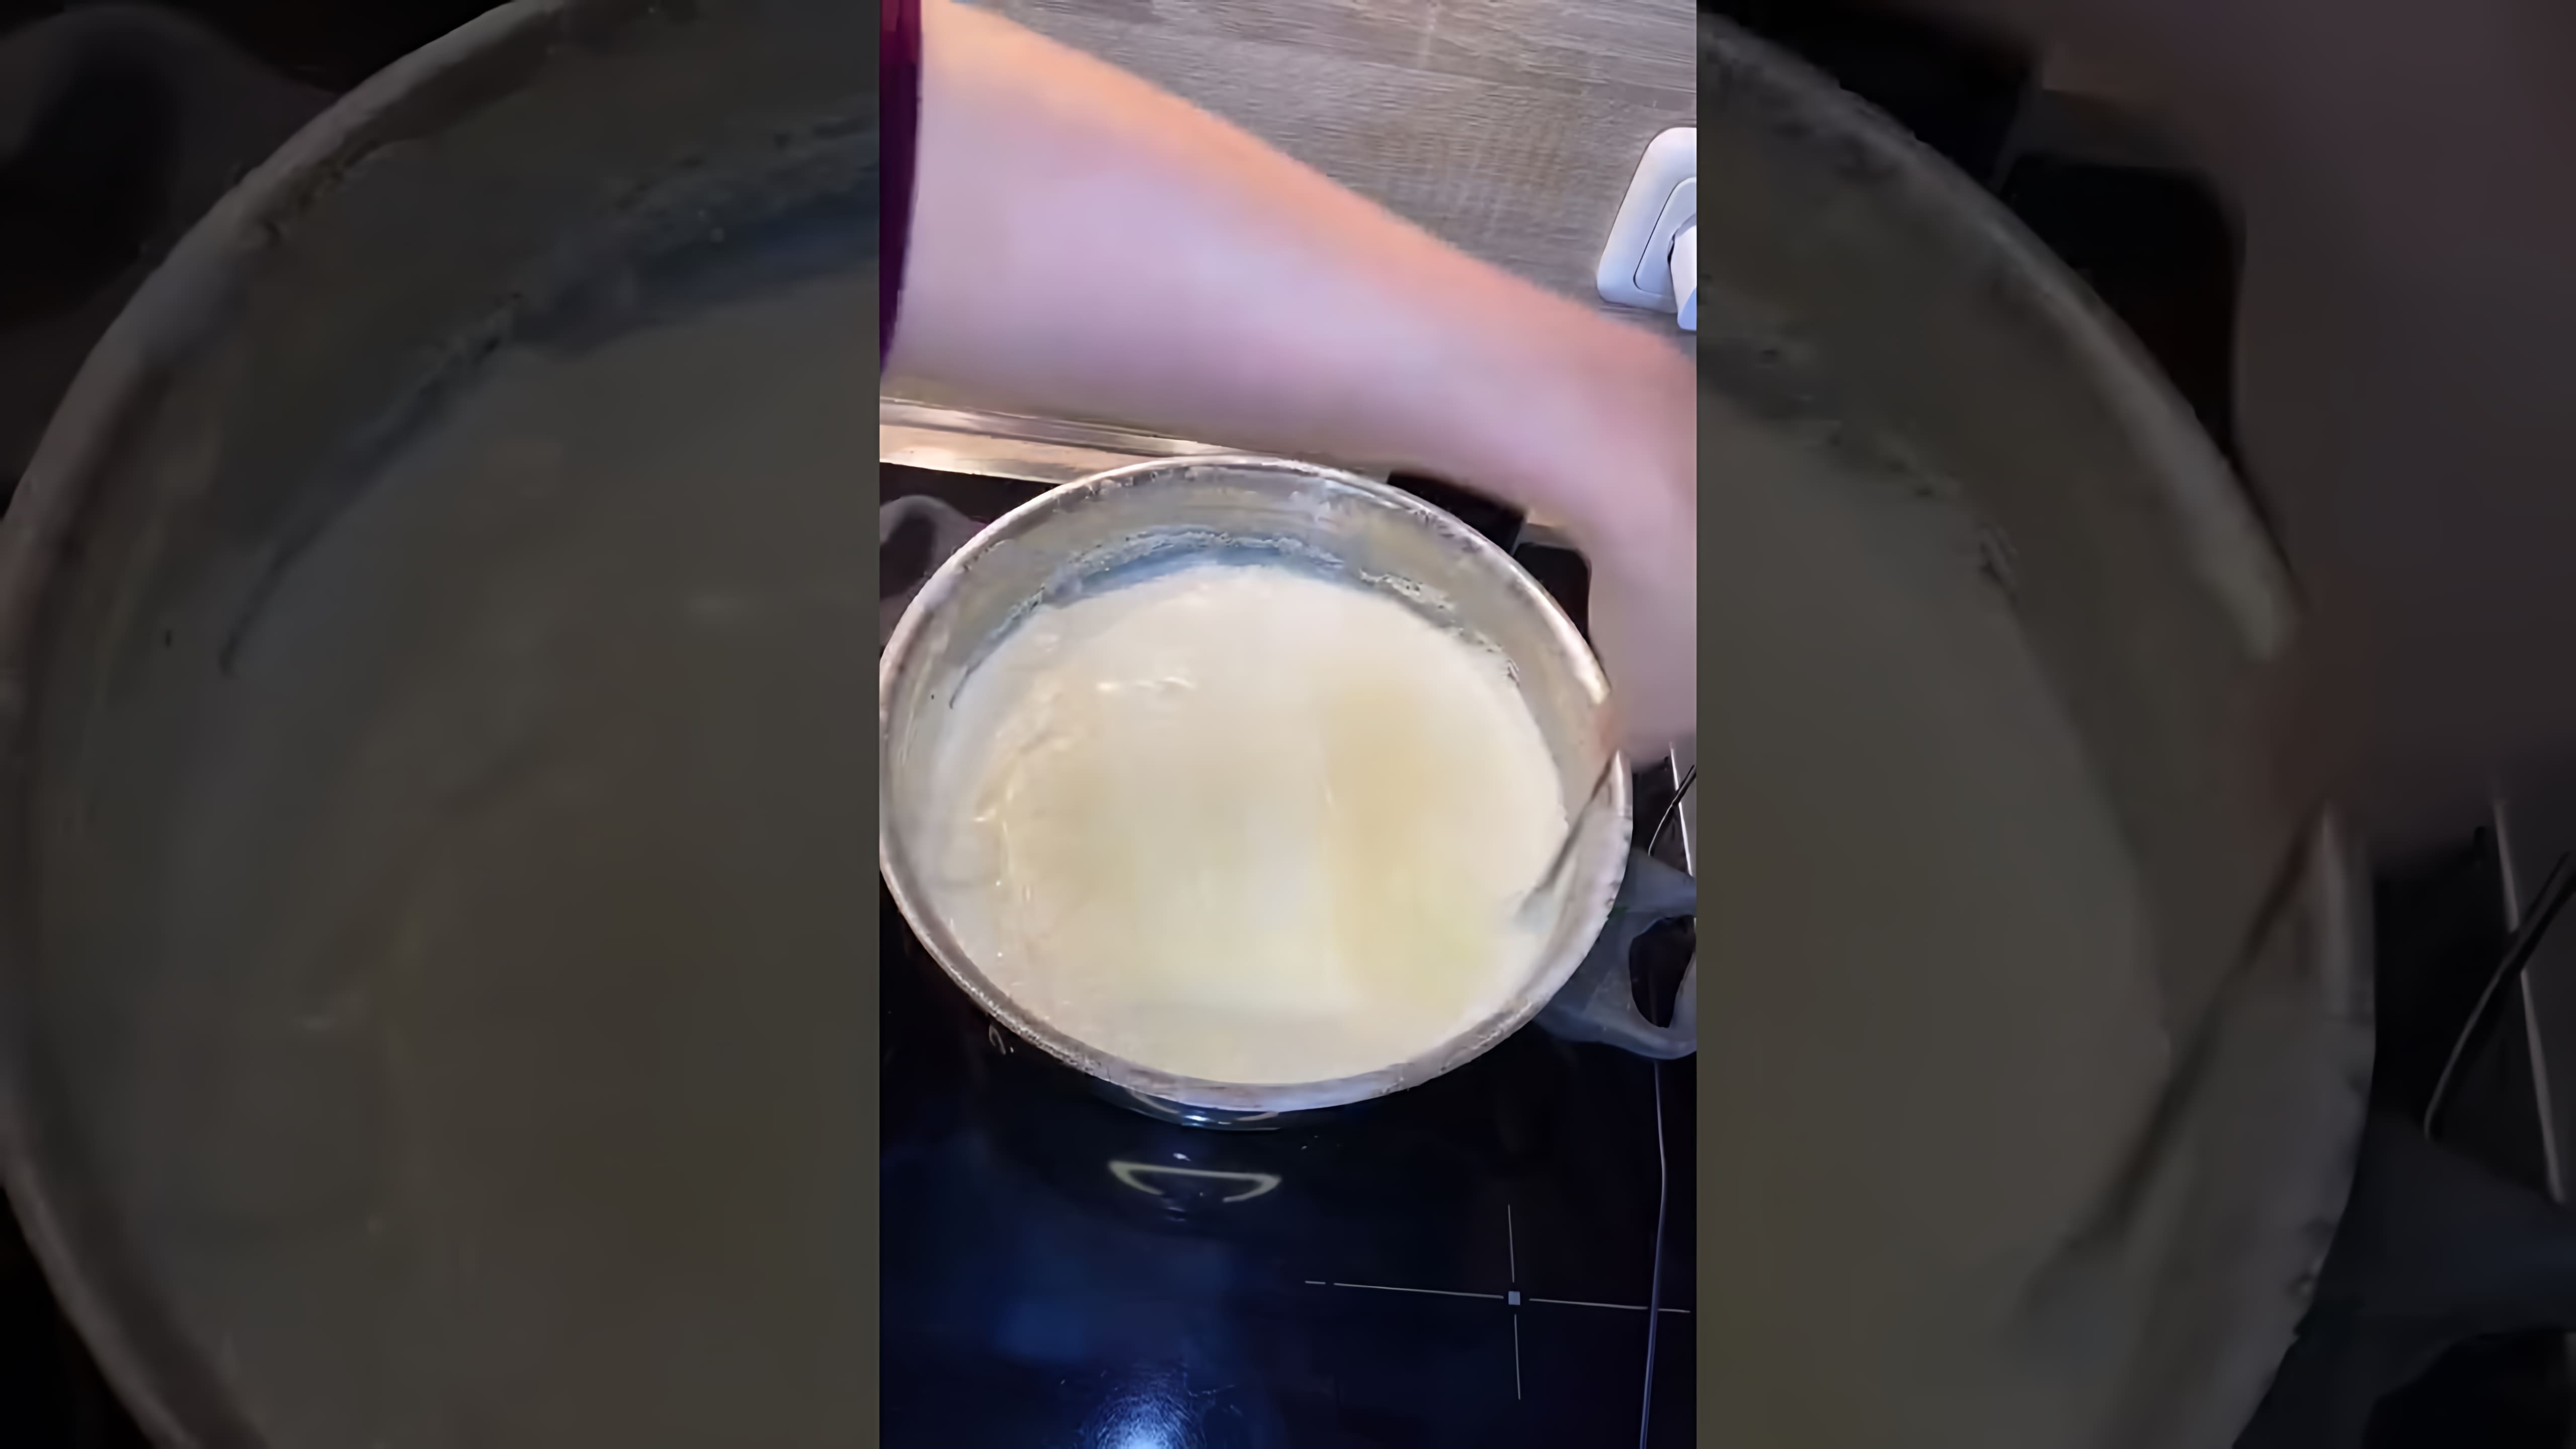 В этом видео демонстрируется рецепт приготовления мацони - традиционного грузинского кисломолочного продукта